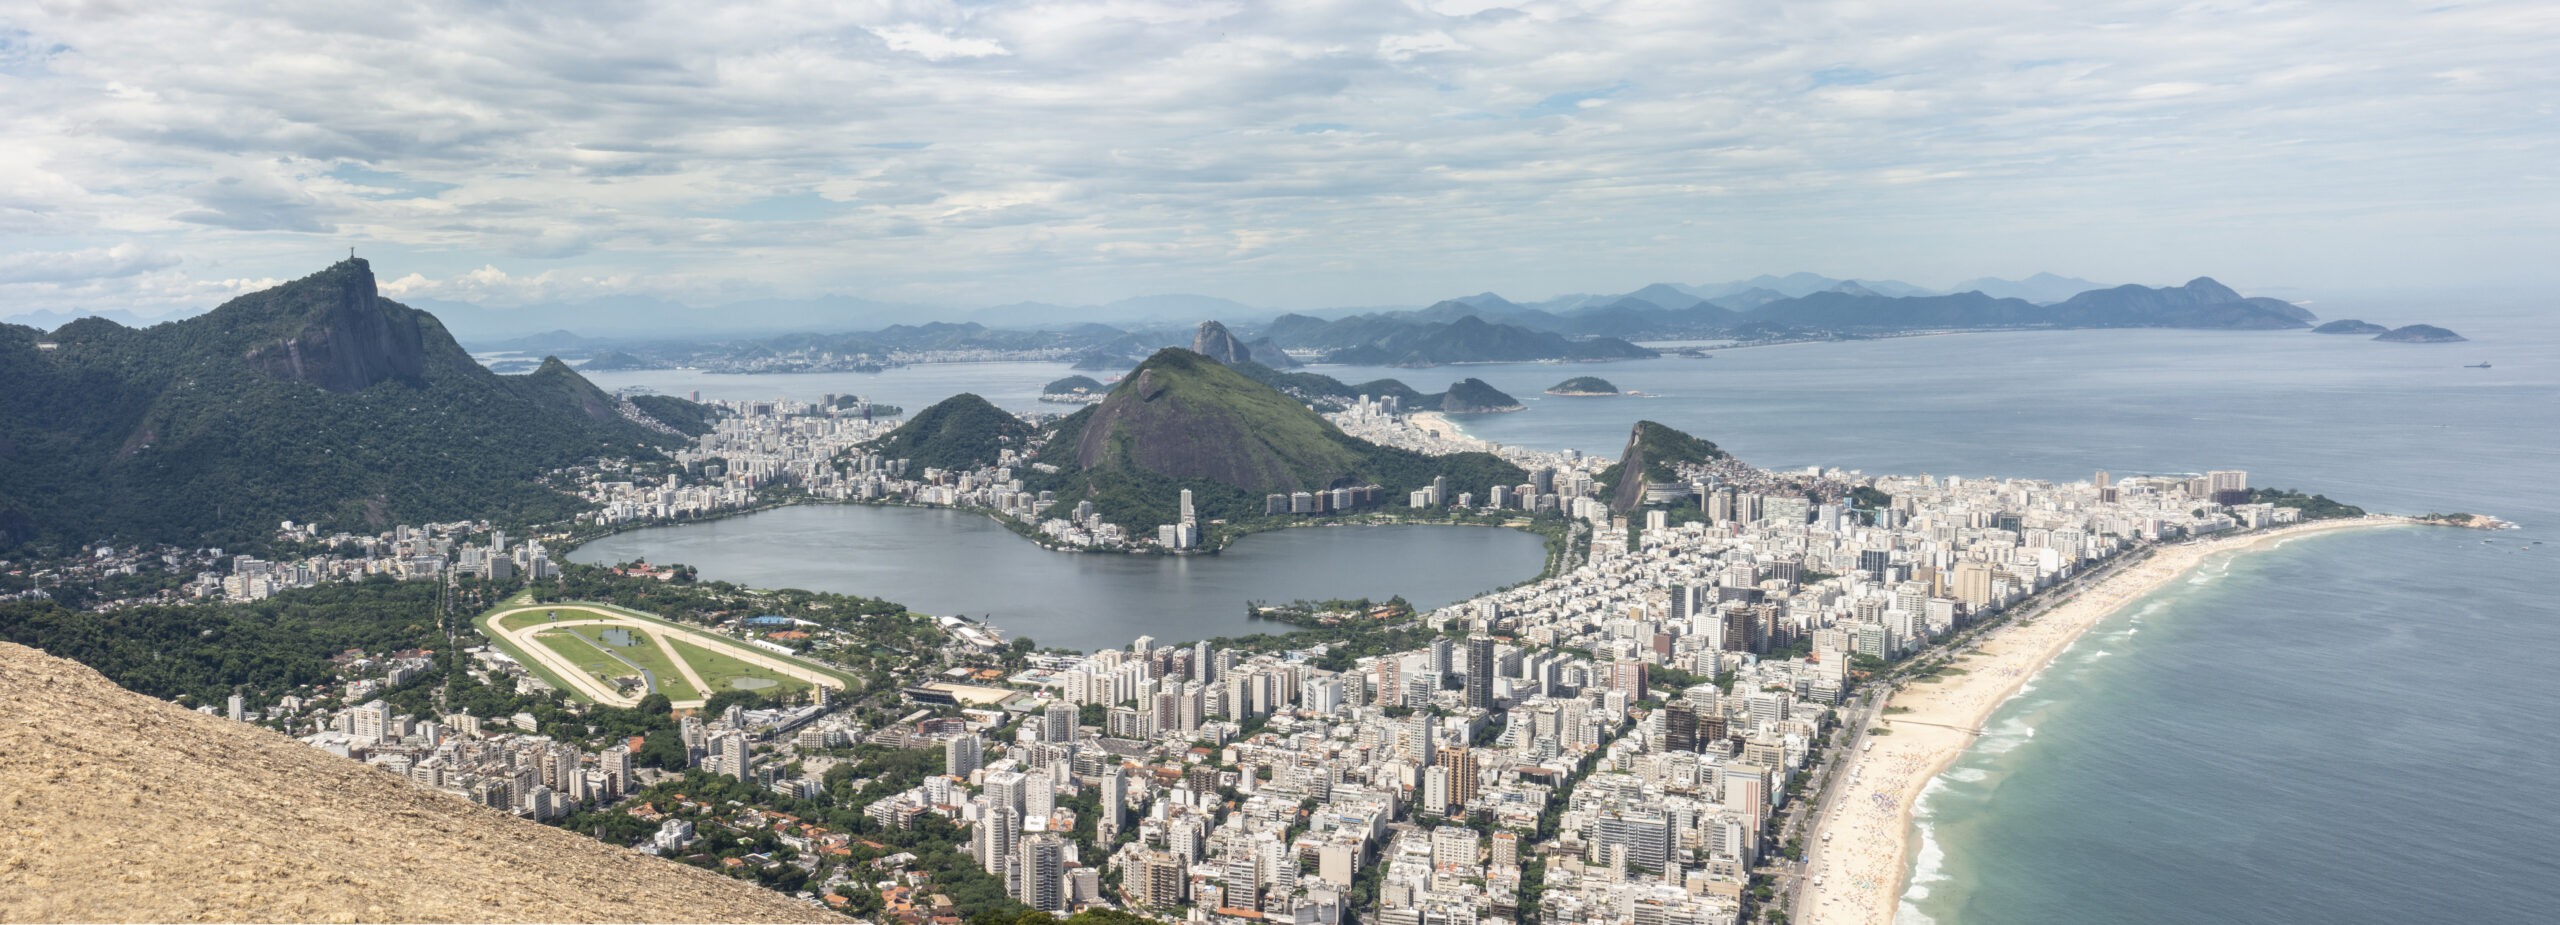 Jeudi 2 novembre, au sommet des Dois Irmãos, la « colline des deux frères », qui domine Rio